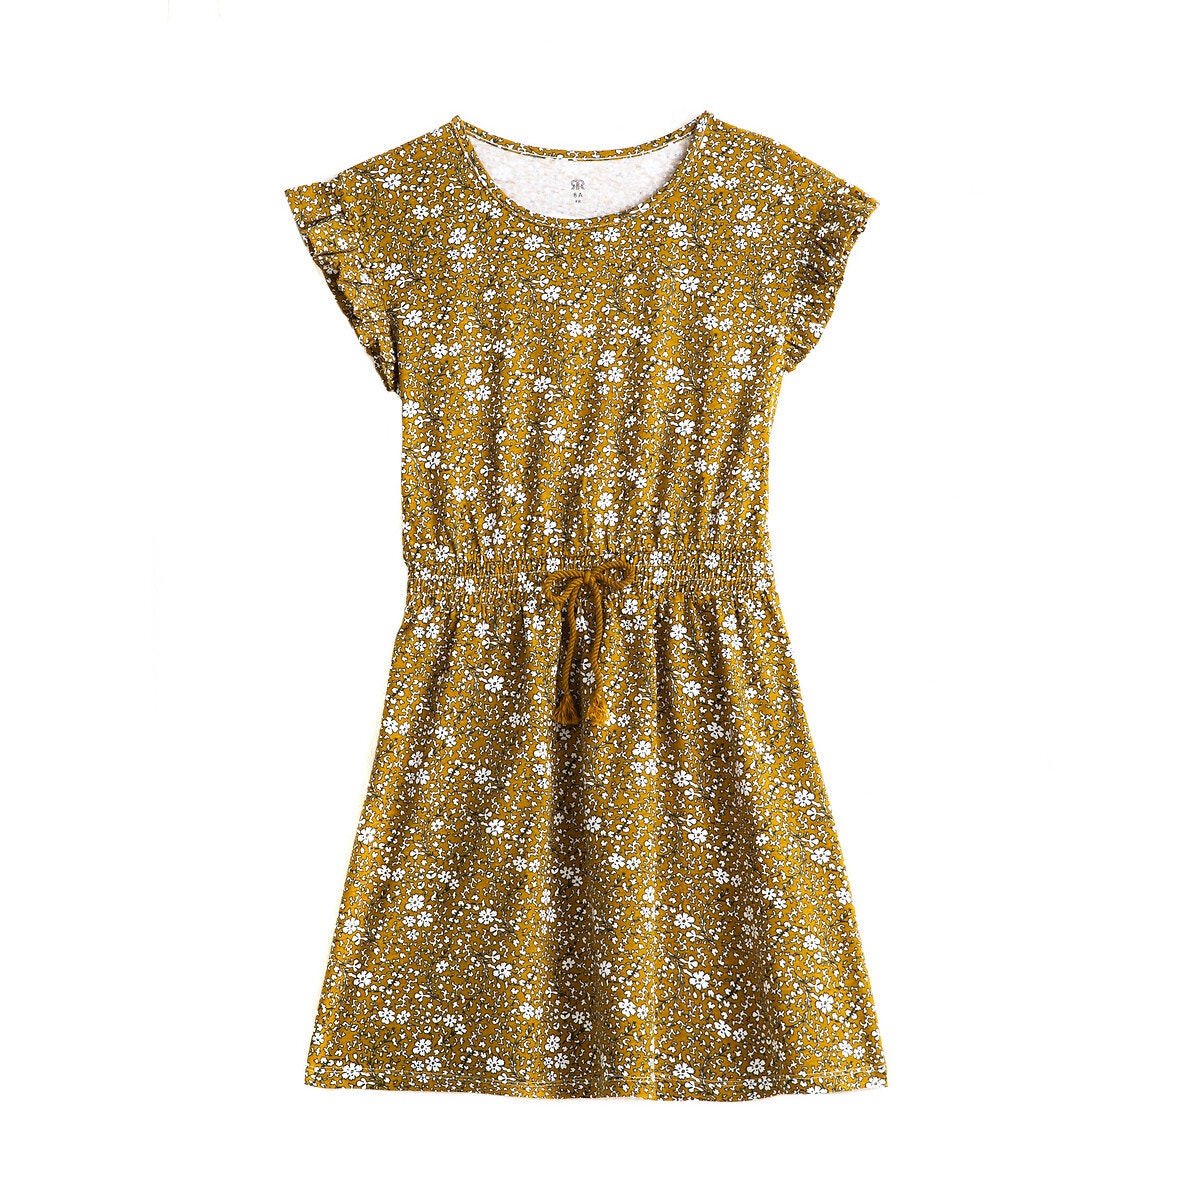 Κοντομάνικο φόρεμα με φλοράλ μοτίβο, 3 -12 ετών